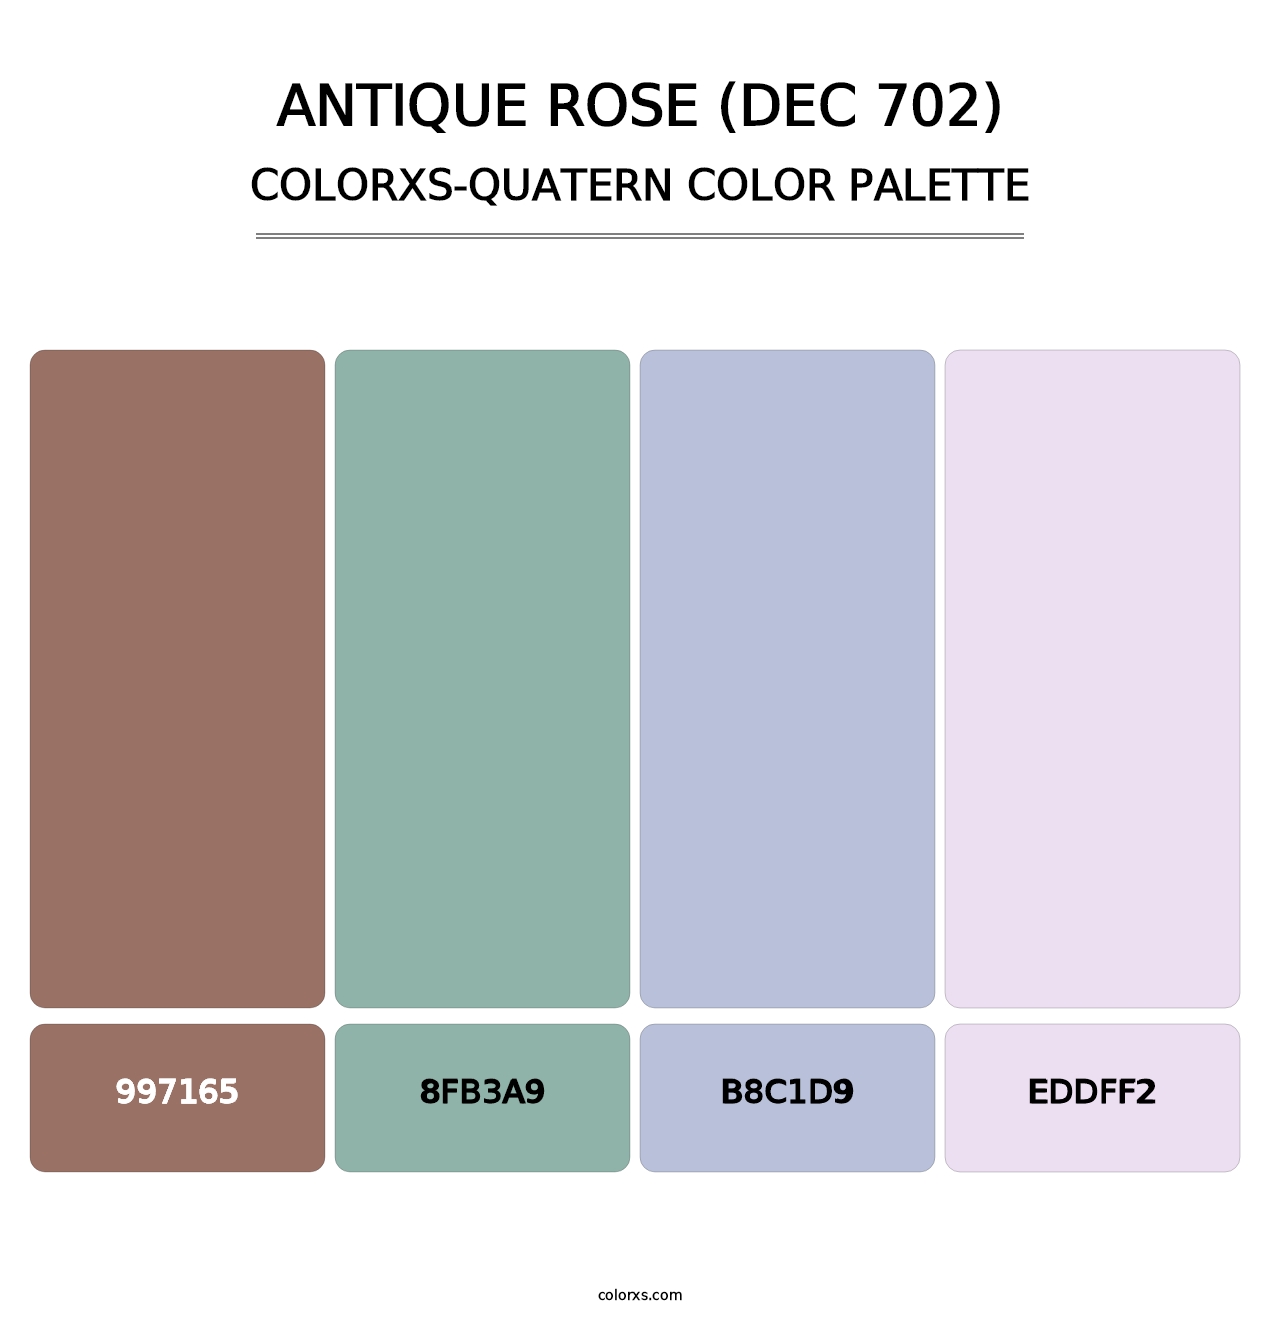 Antique Rose (DEC 702) - Colorxs Quatern Palette